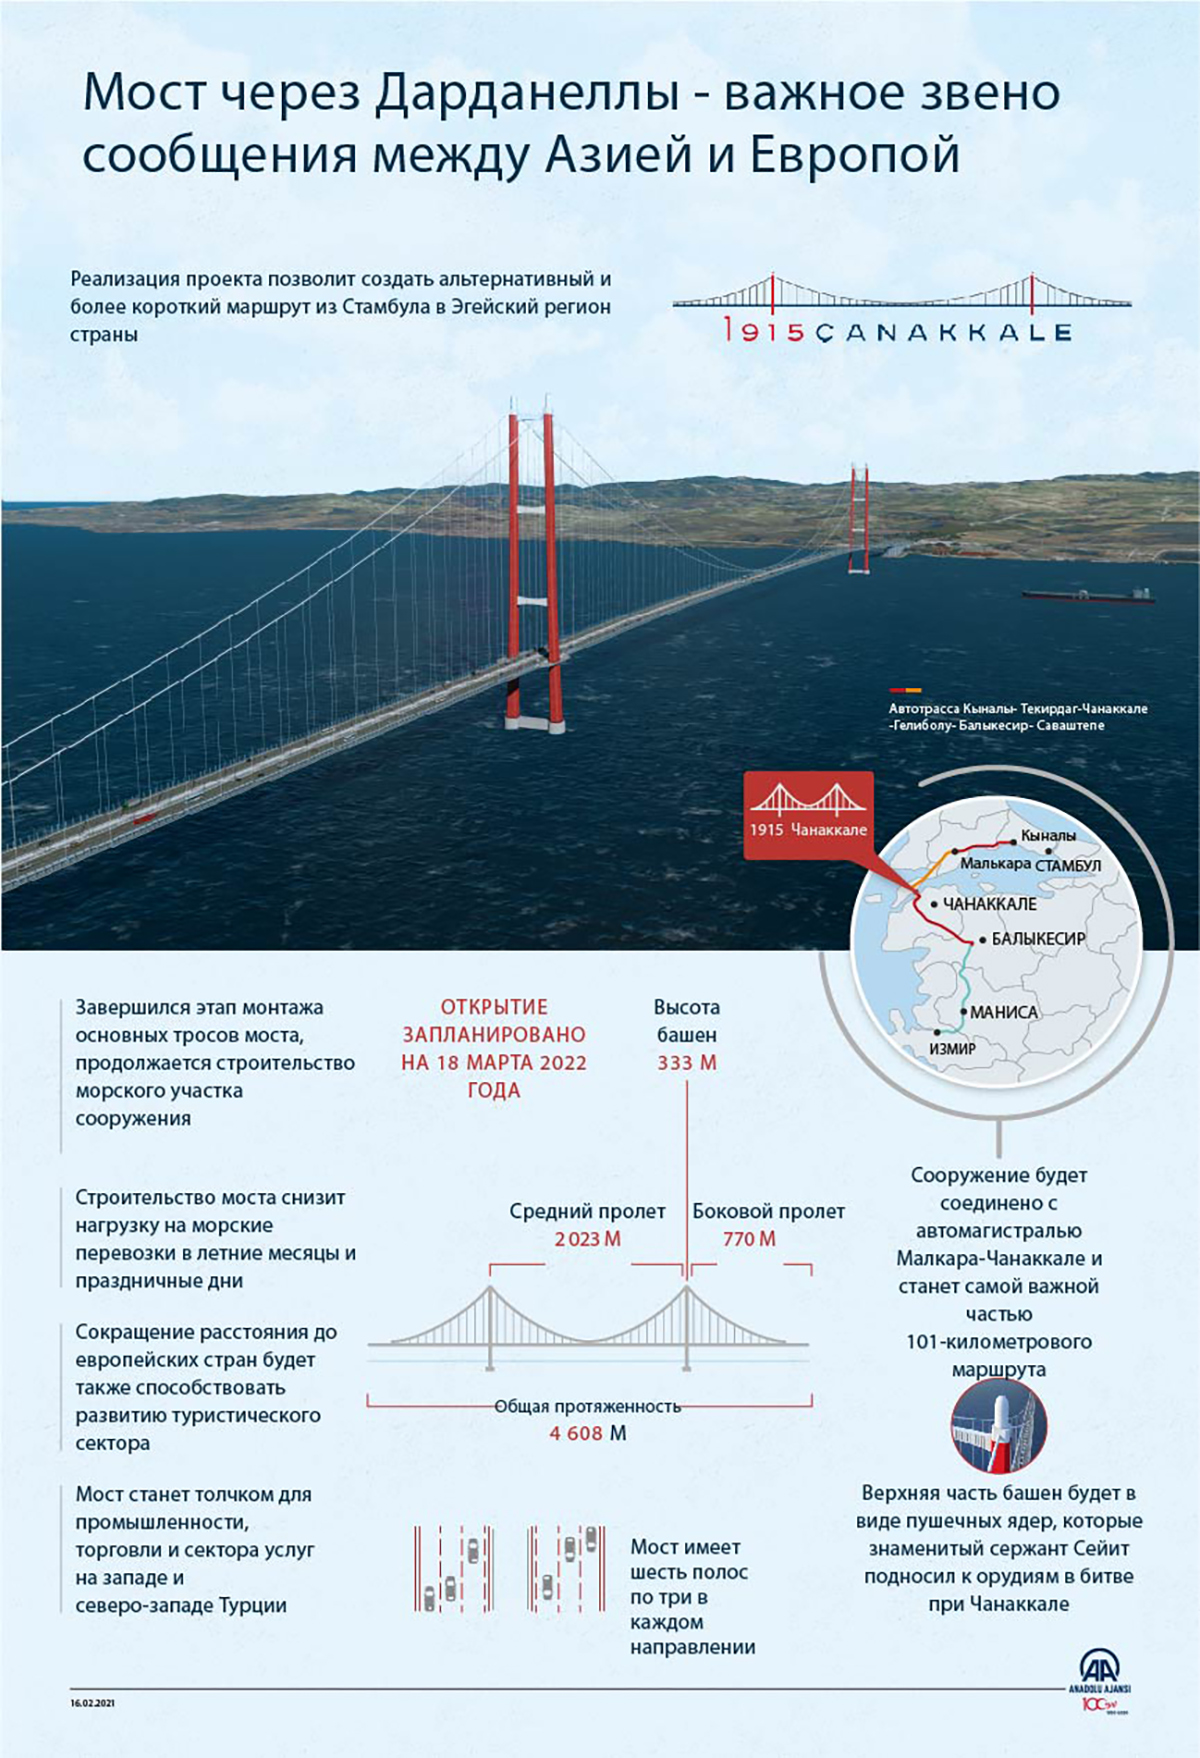 Мост через Дарданеллы — важное звено сообщения между Азией и Европой